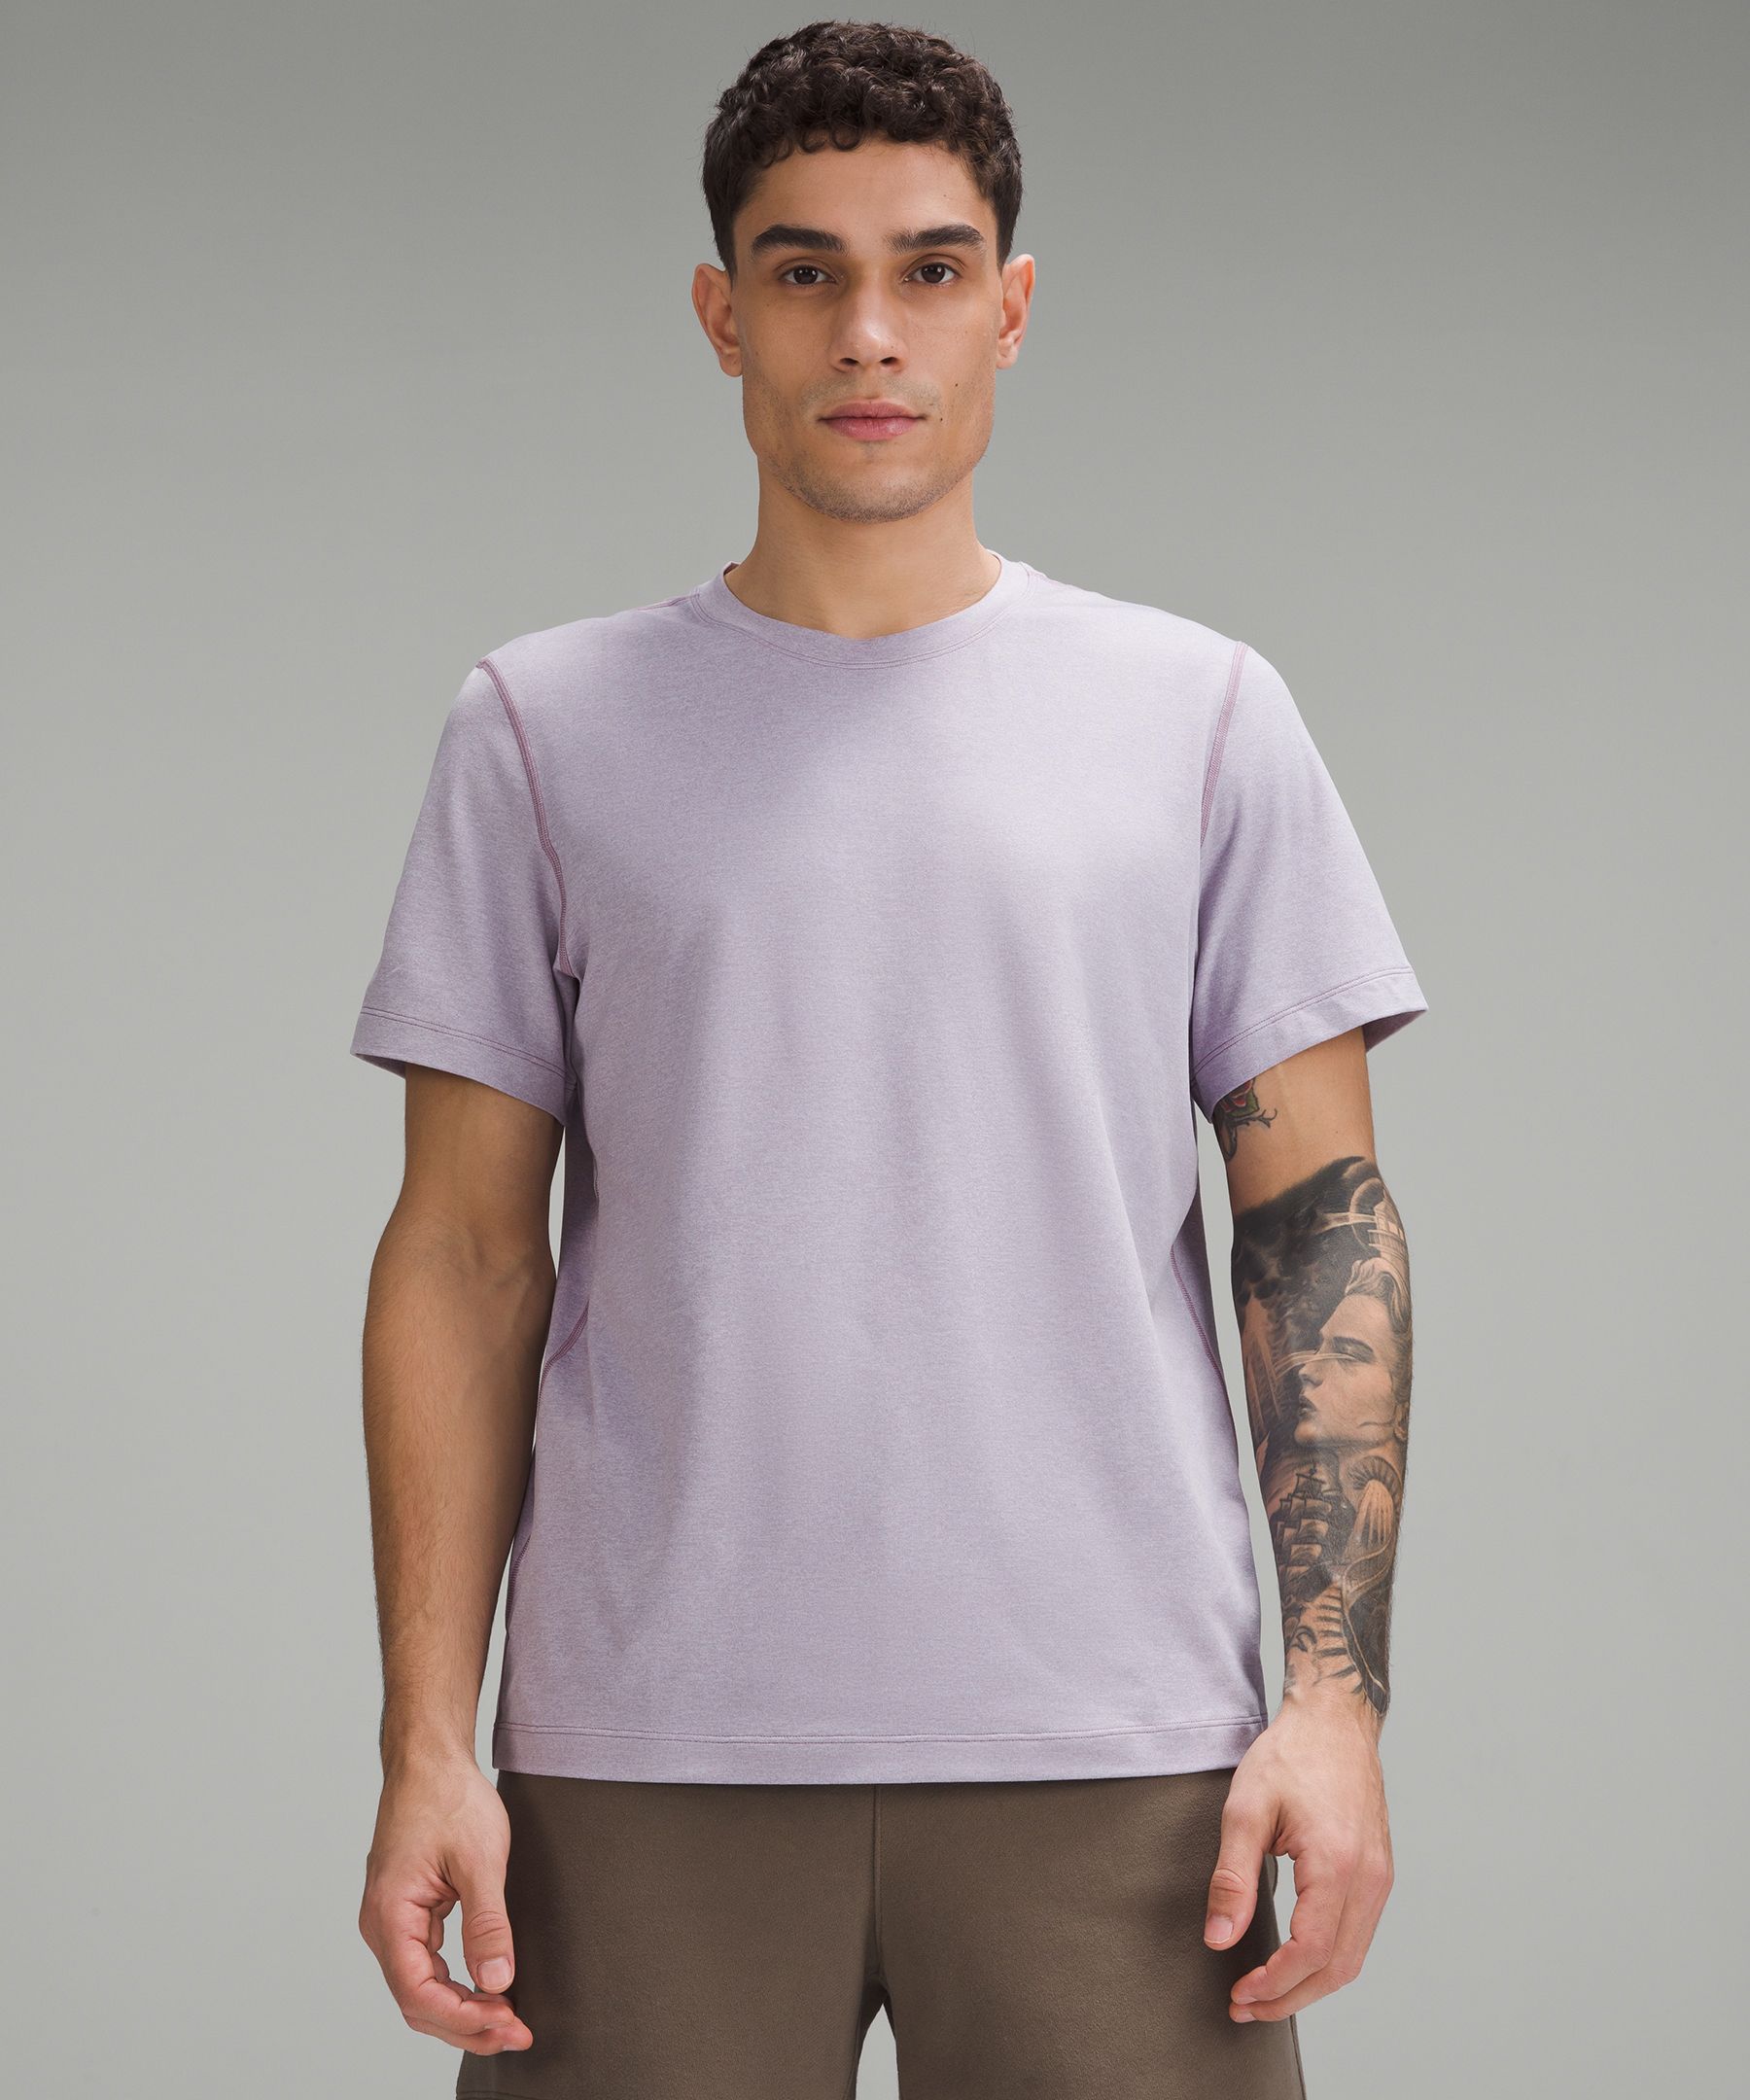 Soft Jersey Short-Sleeve Shirt  Men's Short Sleeve Shirts & Tee's